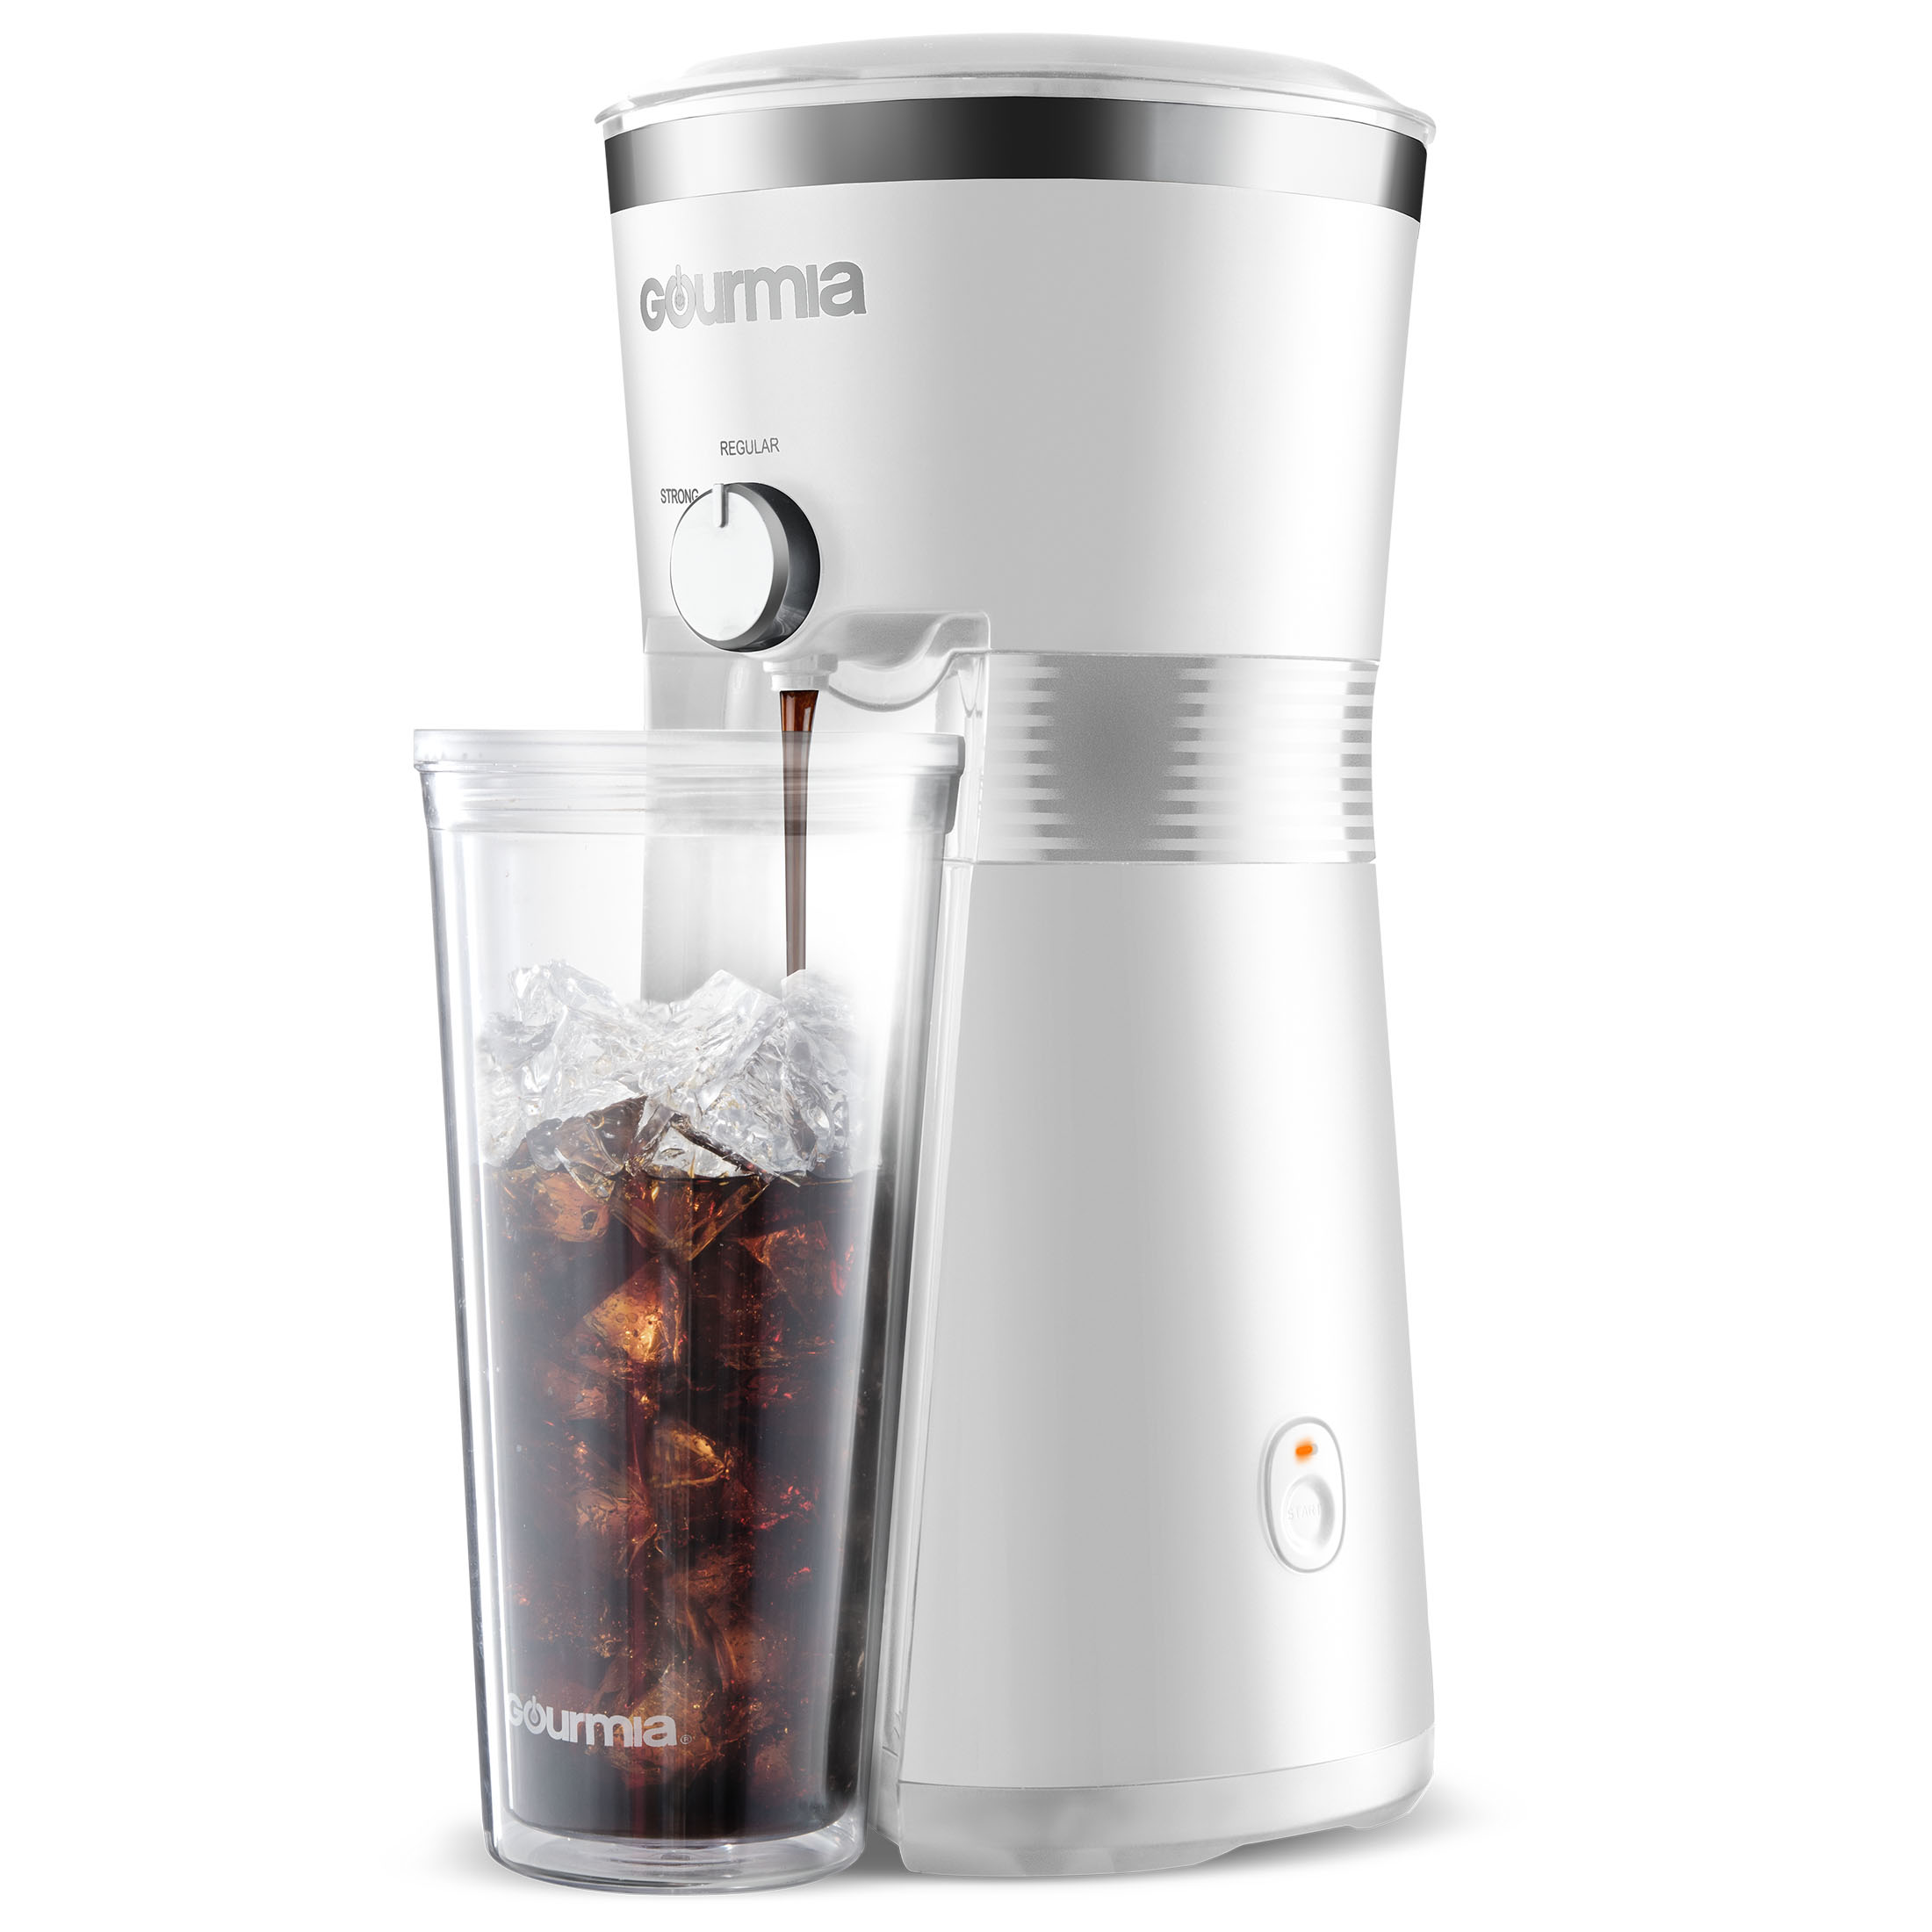 Gourmia Iced Coffee Maker with 25 fl oz. Reusable Tumbler, White - image 3 of 11